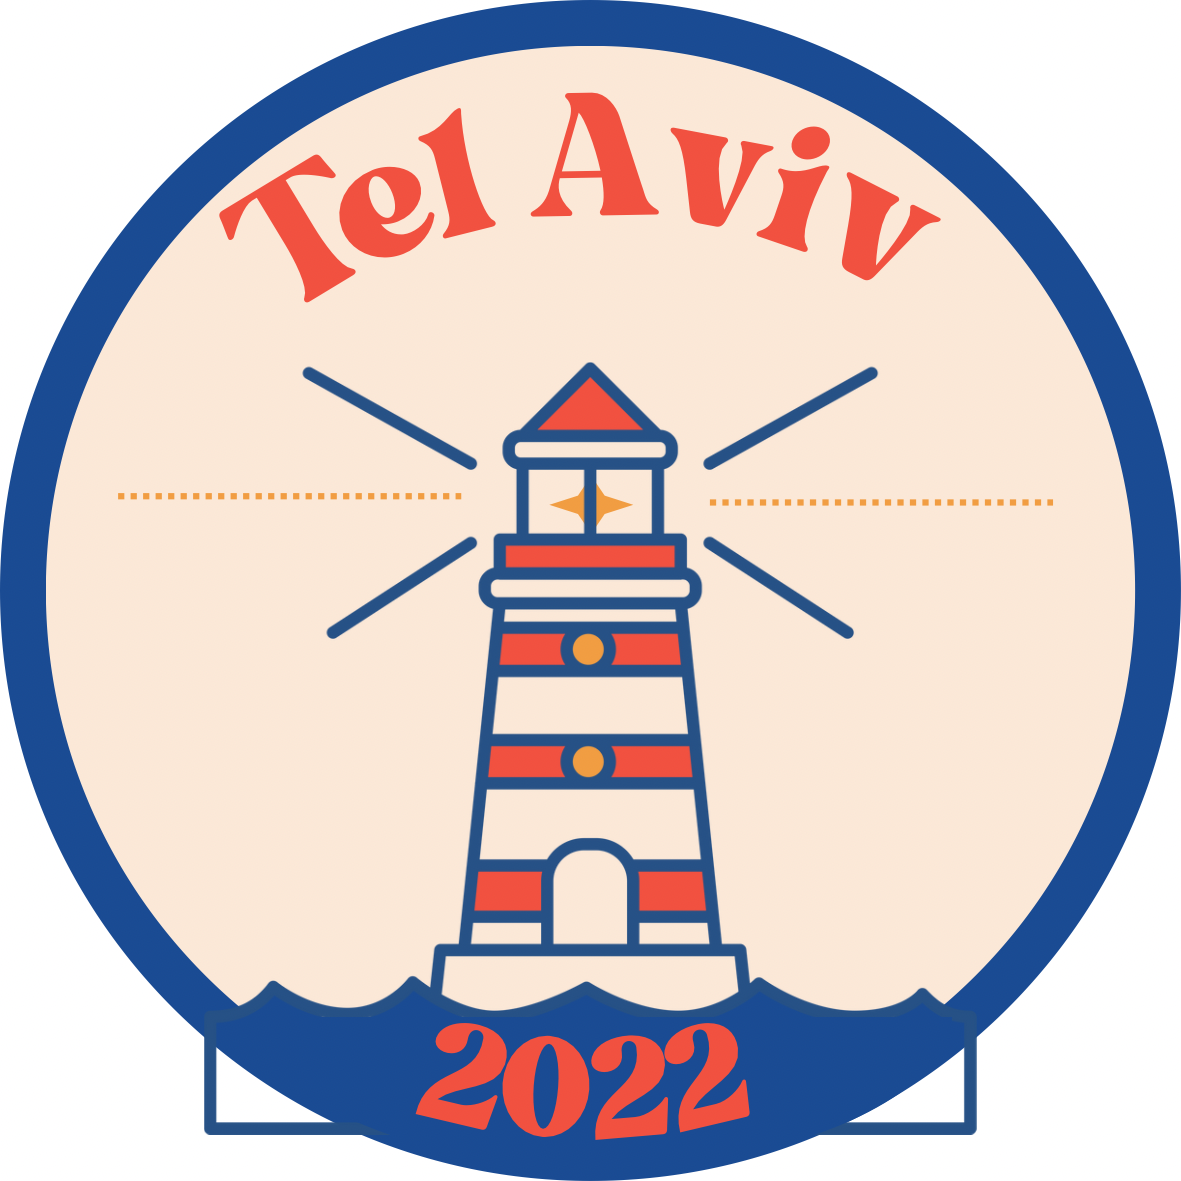 Dana's Tel Aviv Sticker Pack